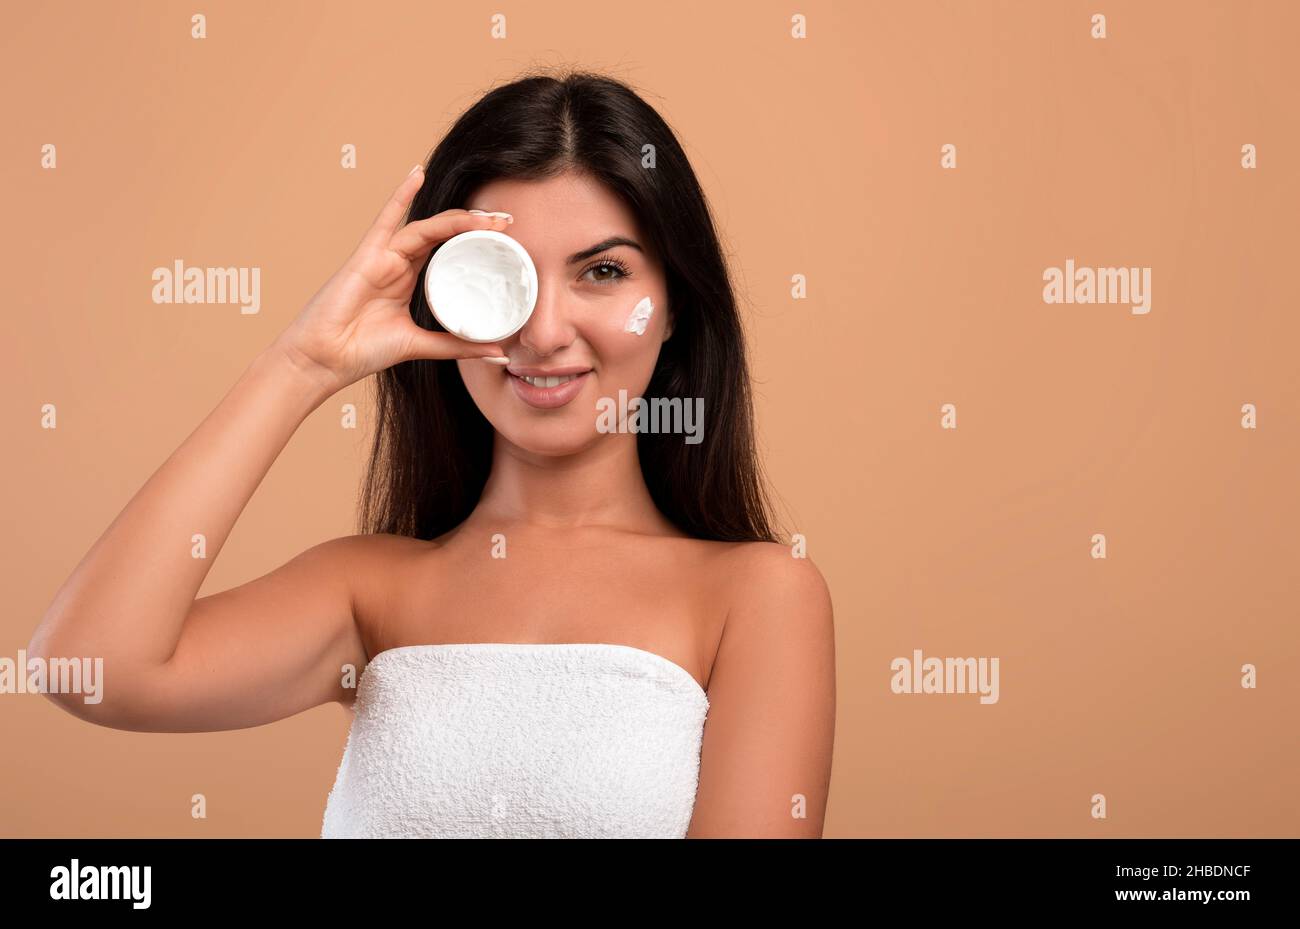 Ritratto di bellezza della graziosa signora armena che tiene il vaso bianco con crema idratante in mano, coprendo un occhio Foto Stock